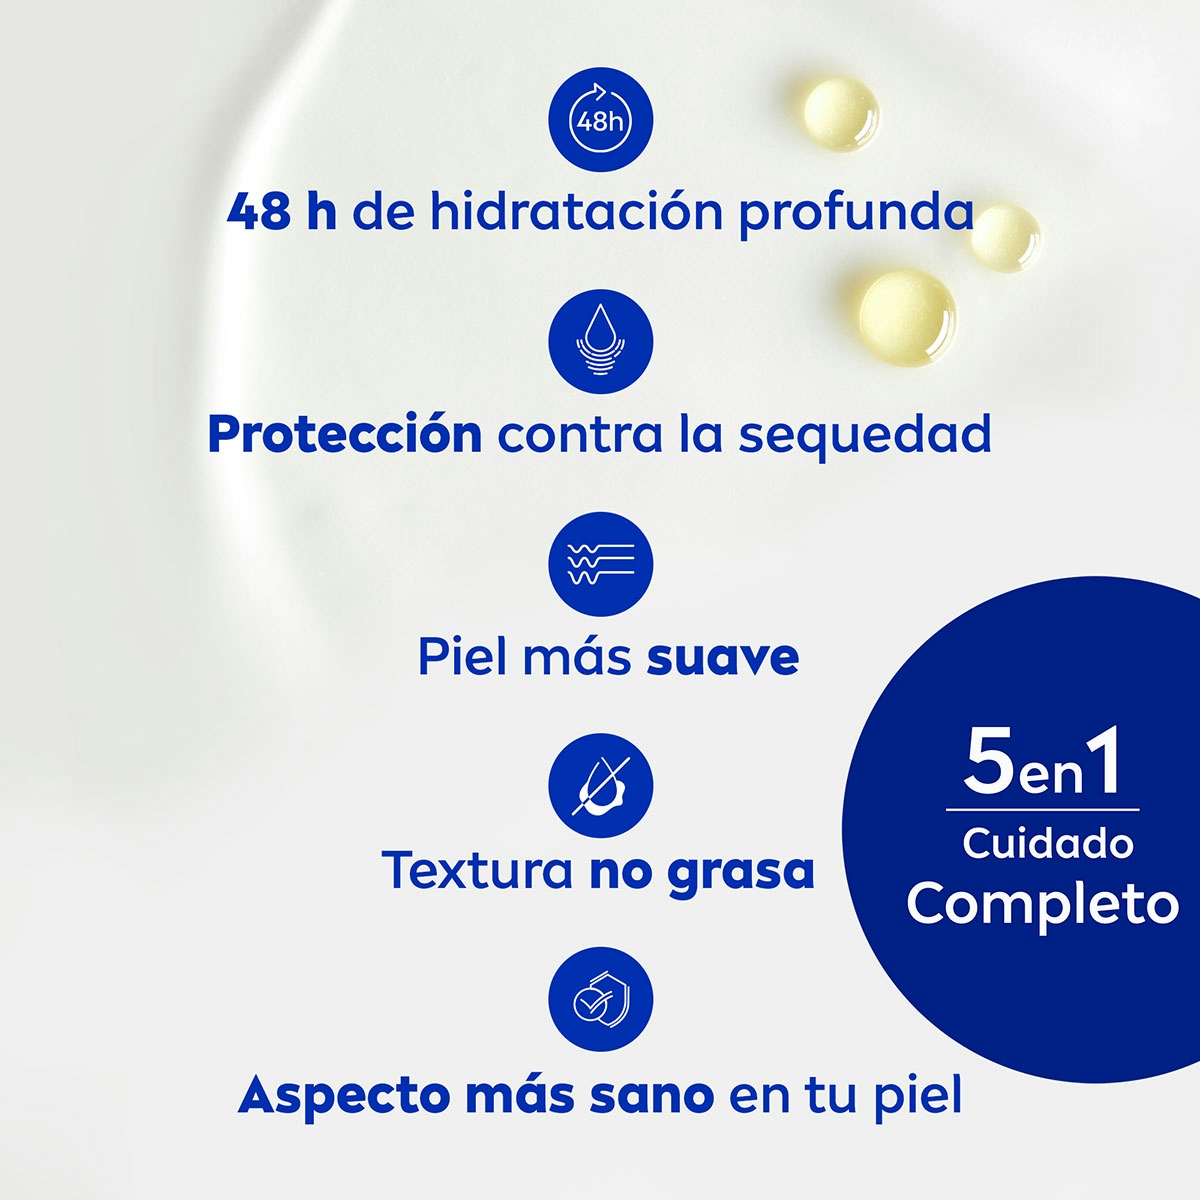 Crema corporal NIVEA smooth milk triple acción hidratante 400 ml